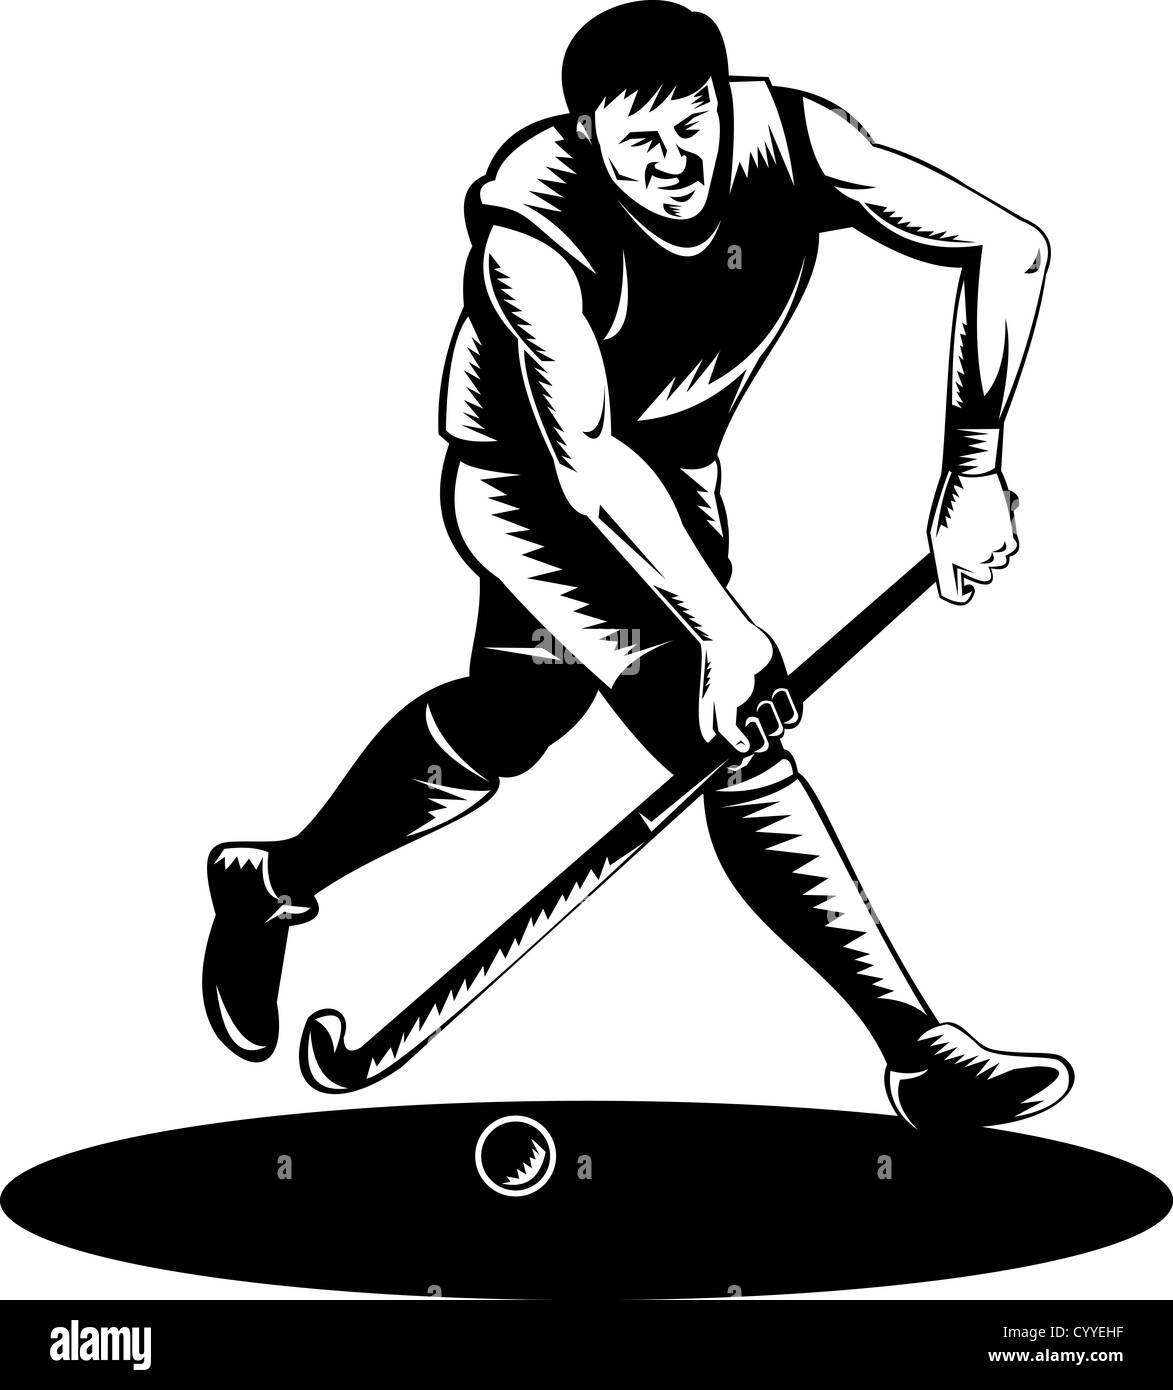 Illustration d'un joueur de hockey stick tournant avec balle frappant fait en rétro style gravure sur bois. Banque D'Images